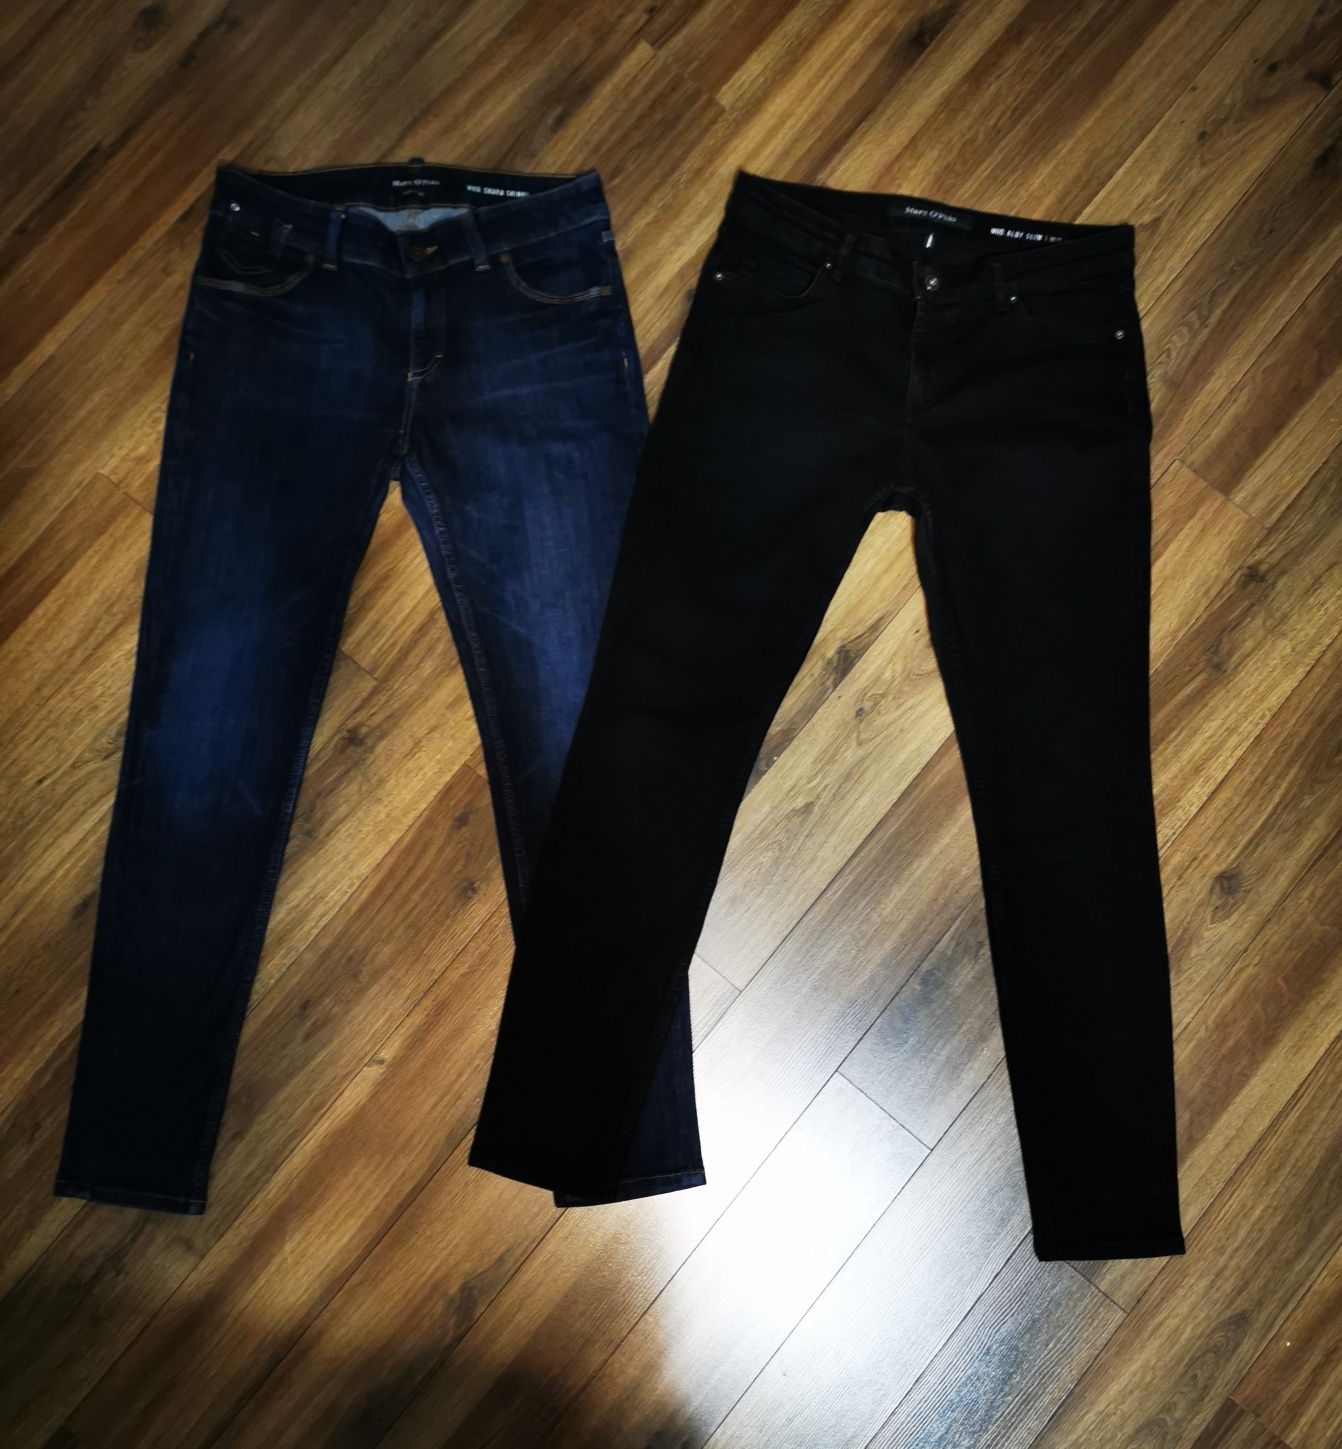 Spodnie damskie, jeansy Marc O'Polo r. 32/32 - 2 pary